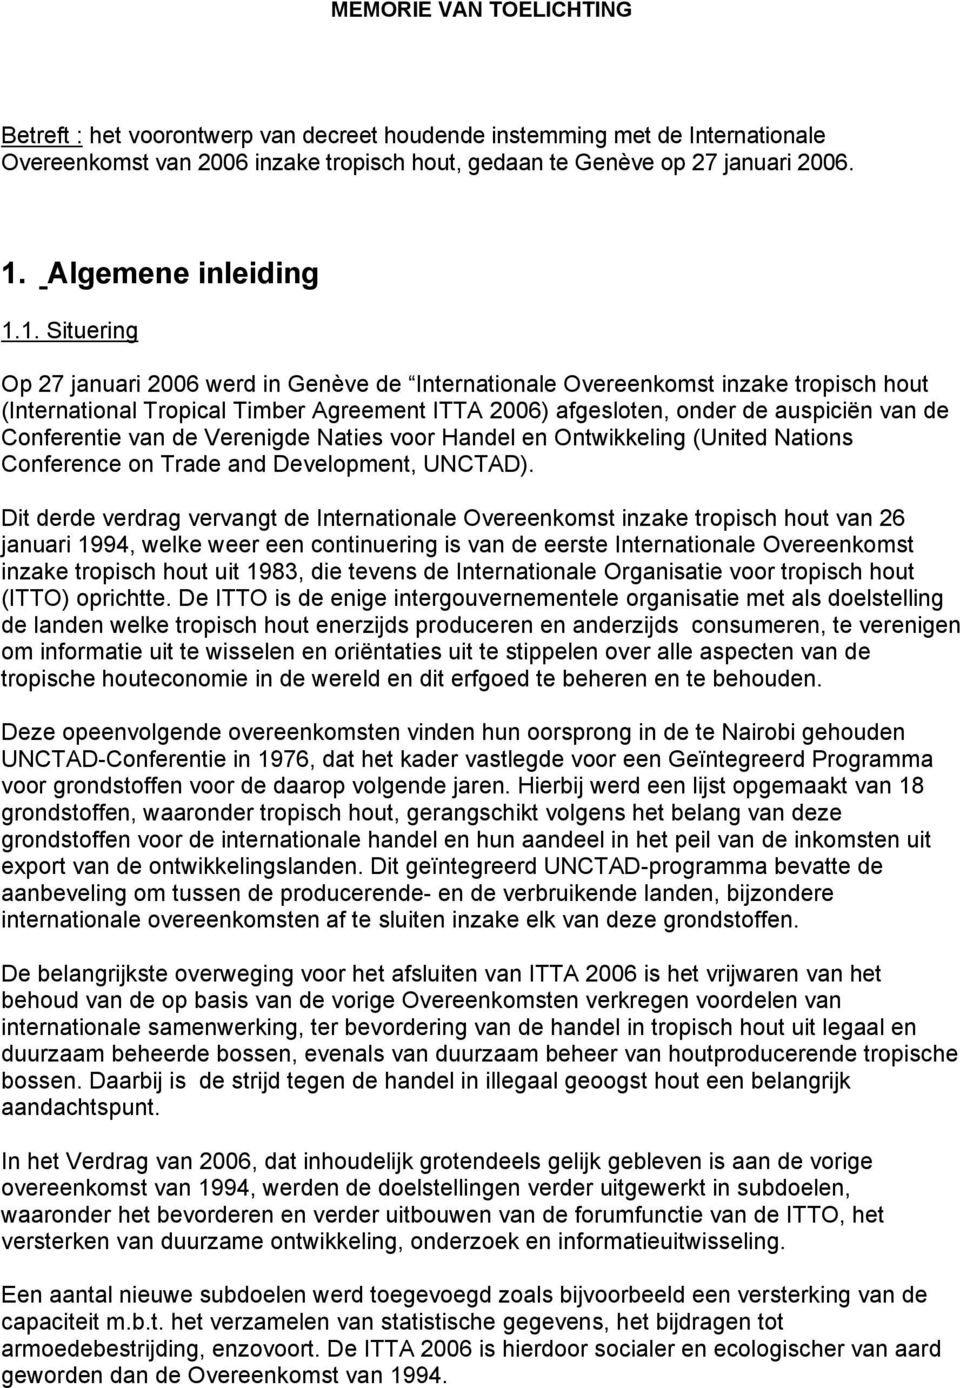 1. Situering Op 27 januari 2006 werd in Genève de Internationale Overeenkomst inzake tropisch hout (International Tropical Timber Agreement ITTA 2006) afgesloten, onder de auspiciën van de